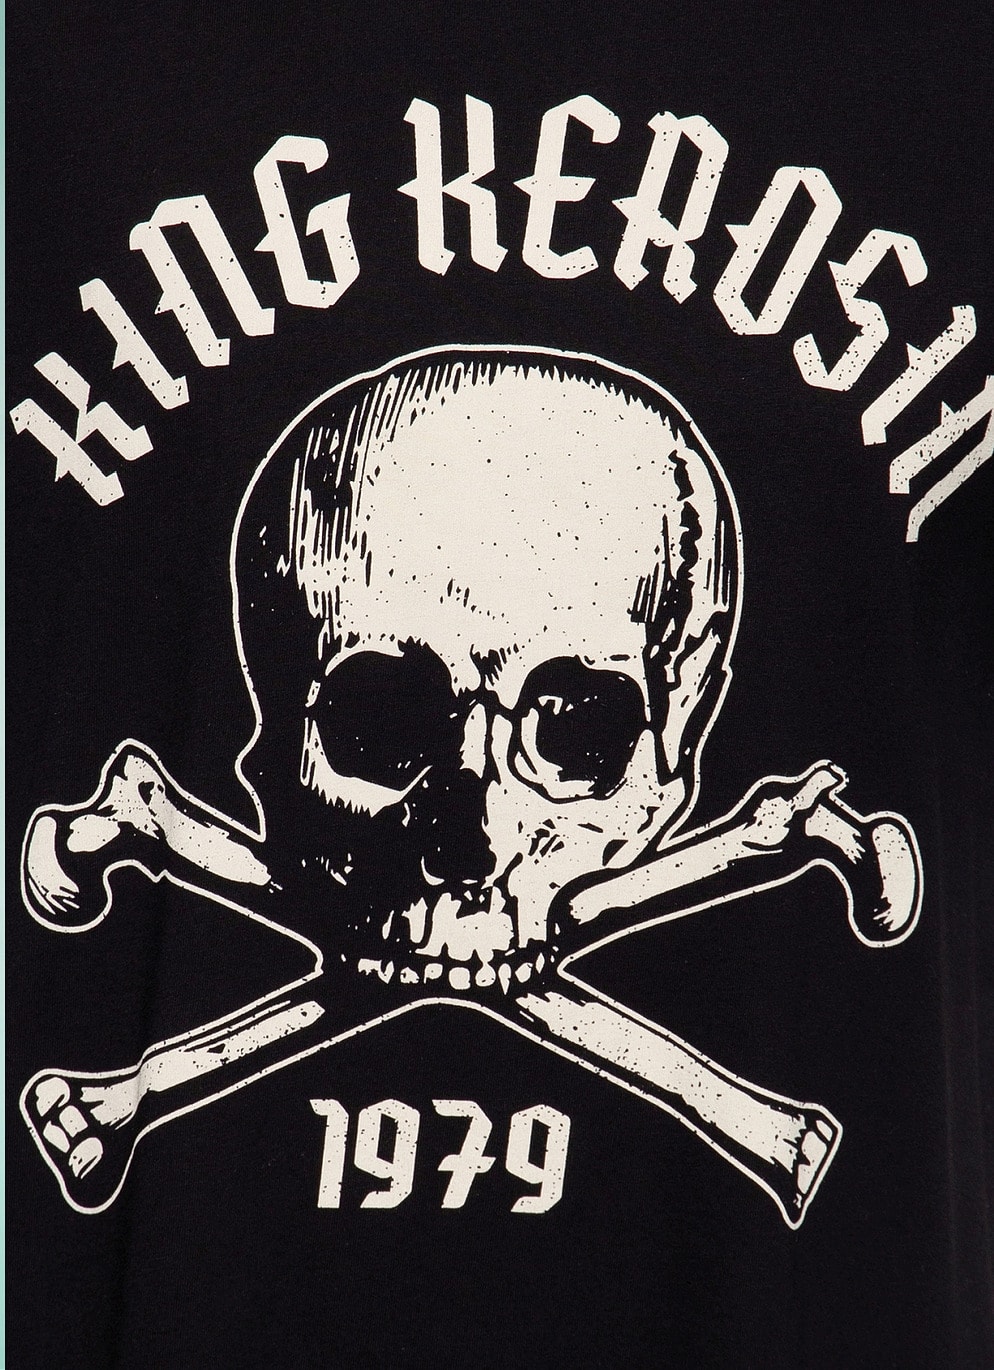 King Kerosin 50er Jahre Retro Rockabilly Herren T-Shirt Skull Palma in Schwarz KKU21003-200